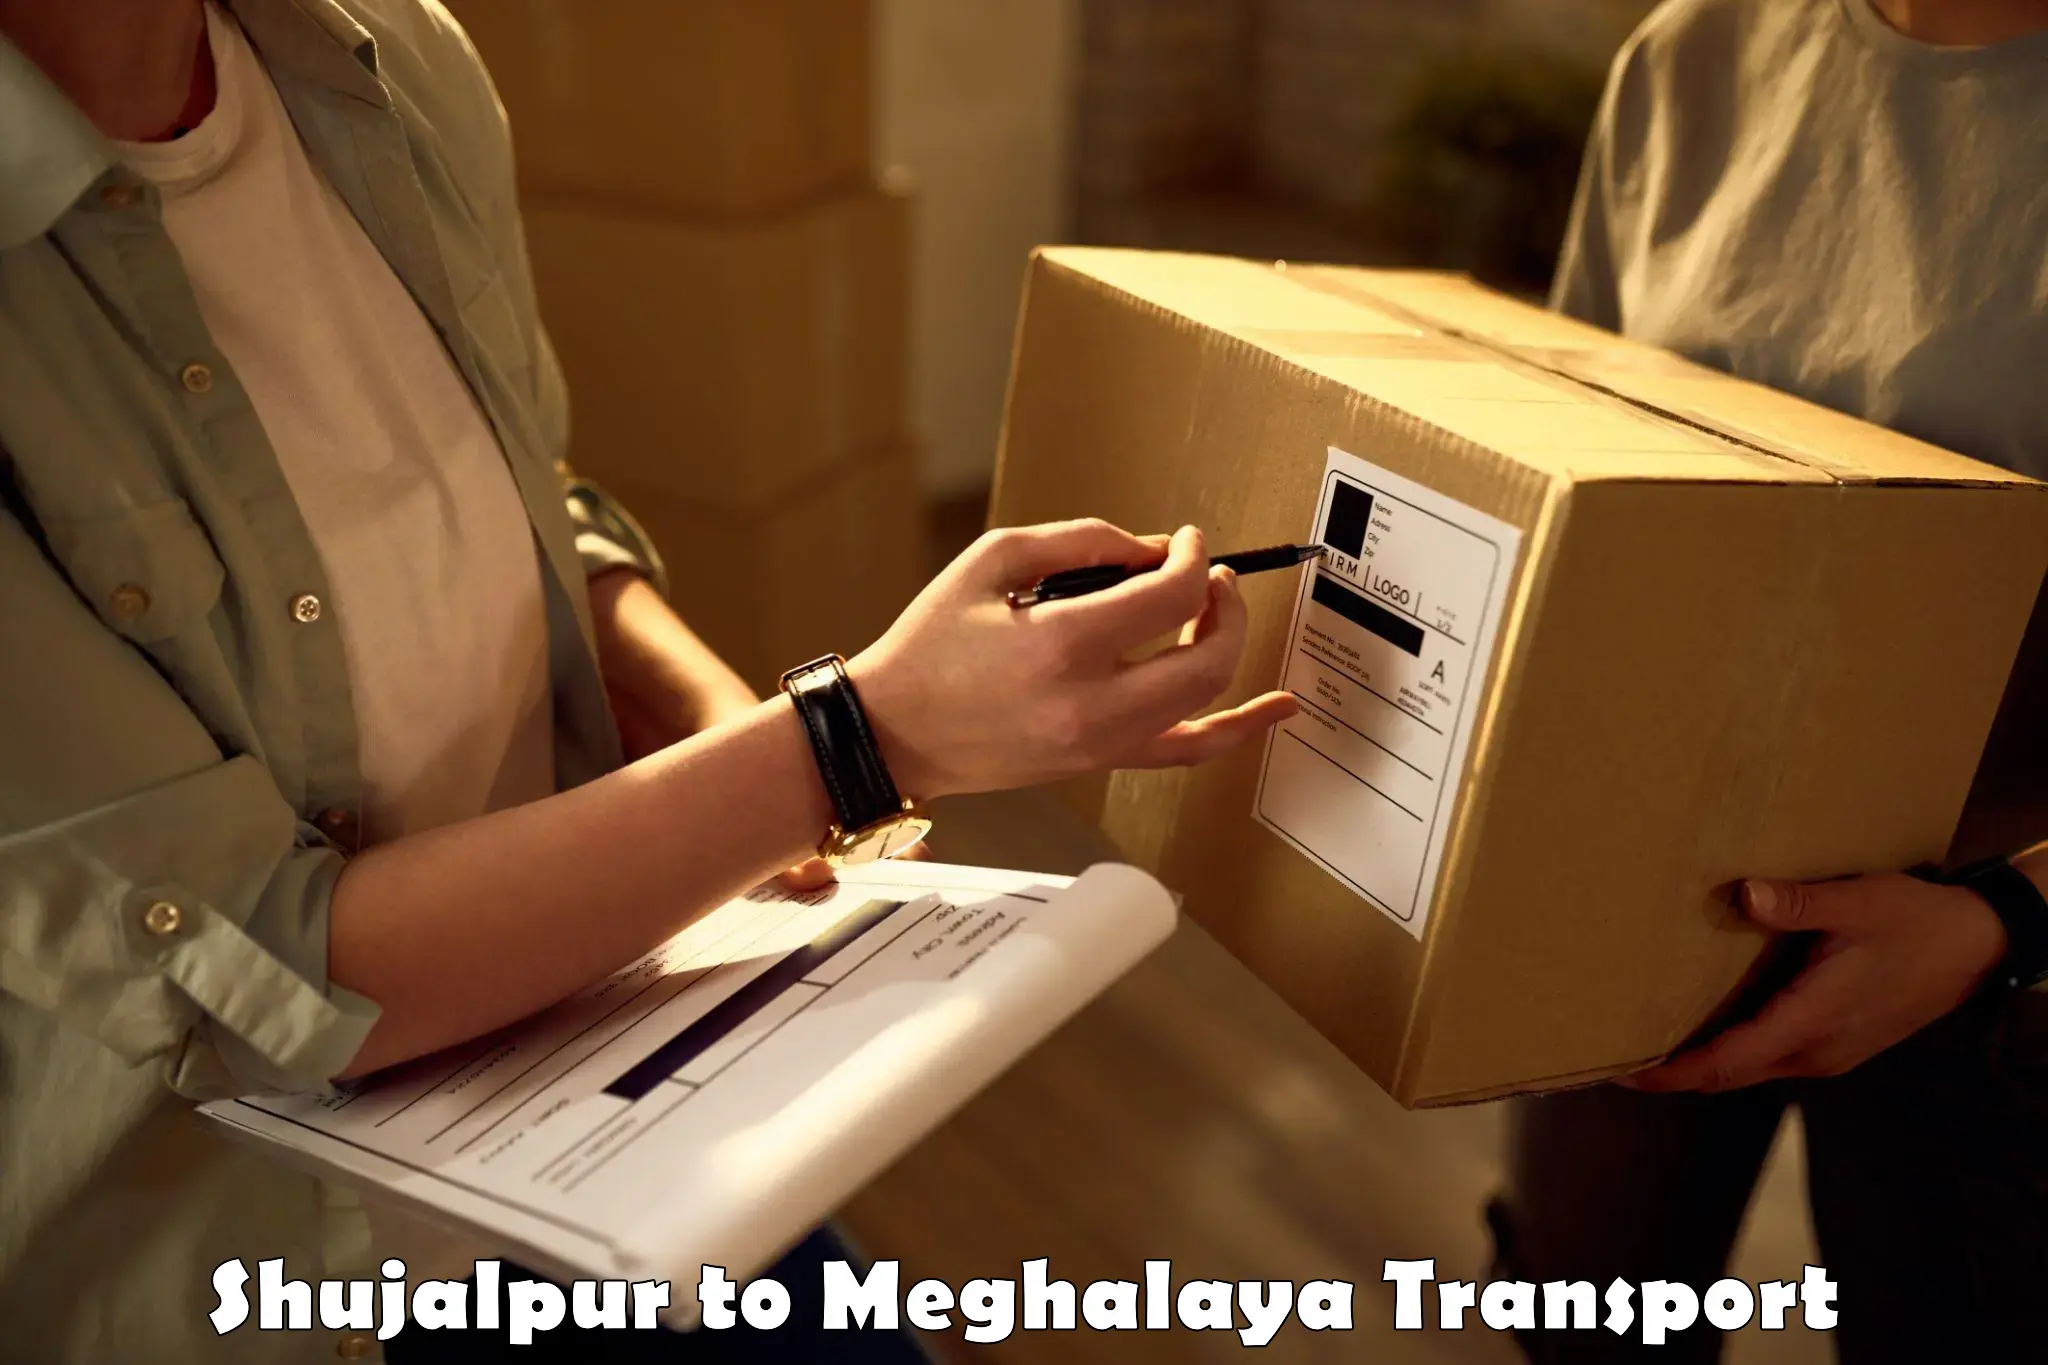 Furniture transport service Shujalpur to Meghalaya